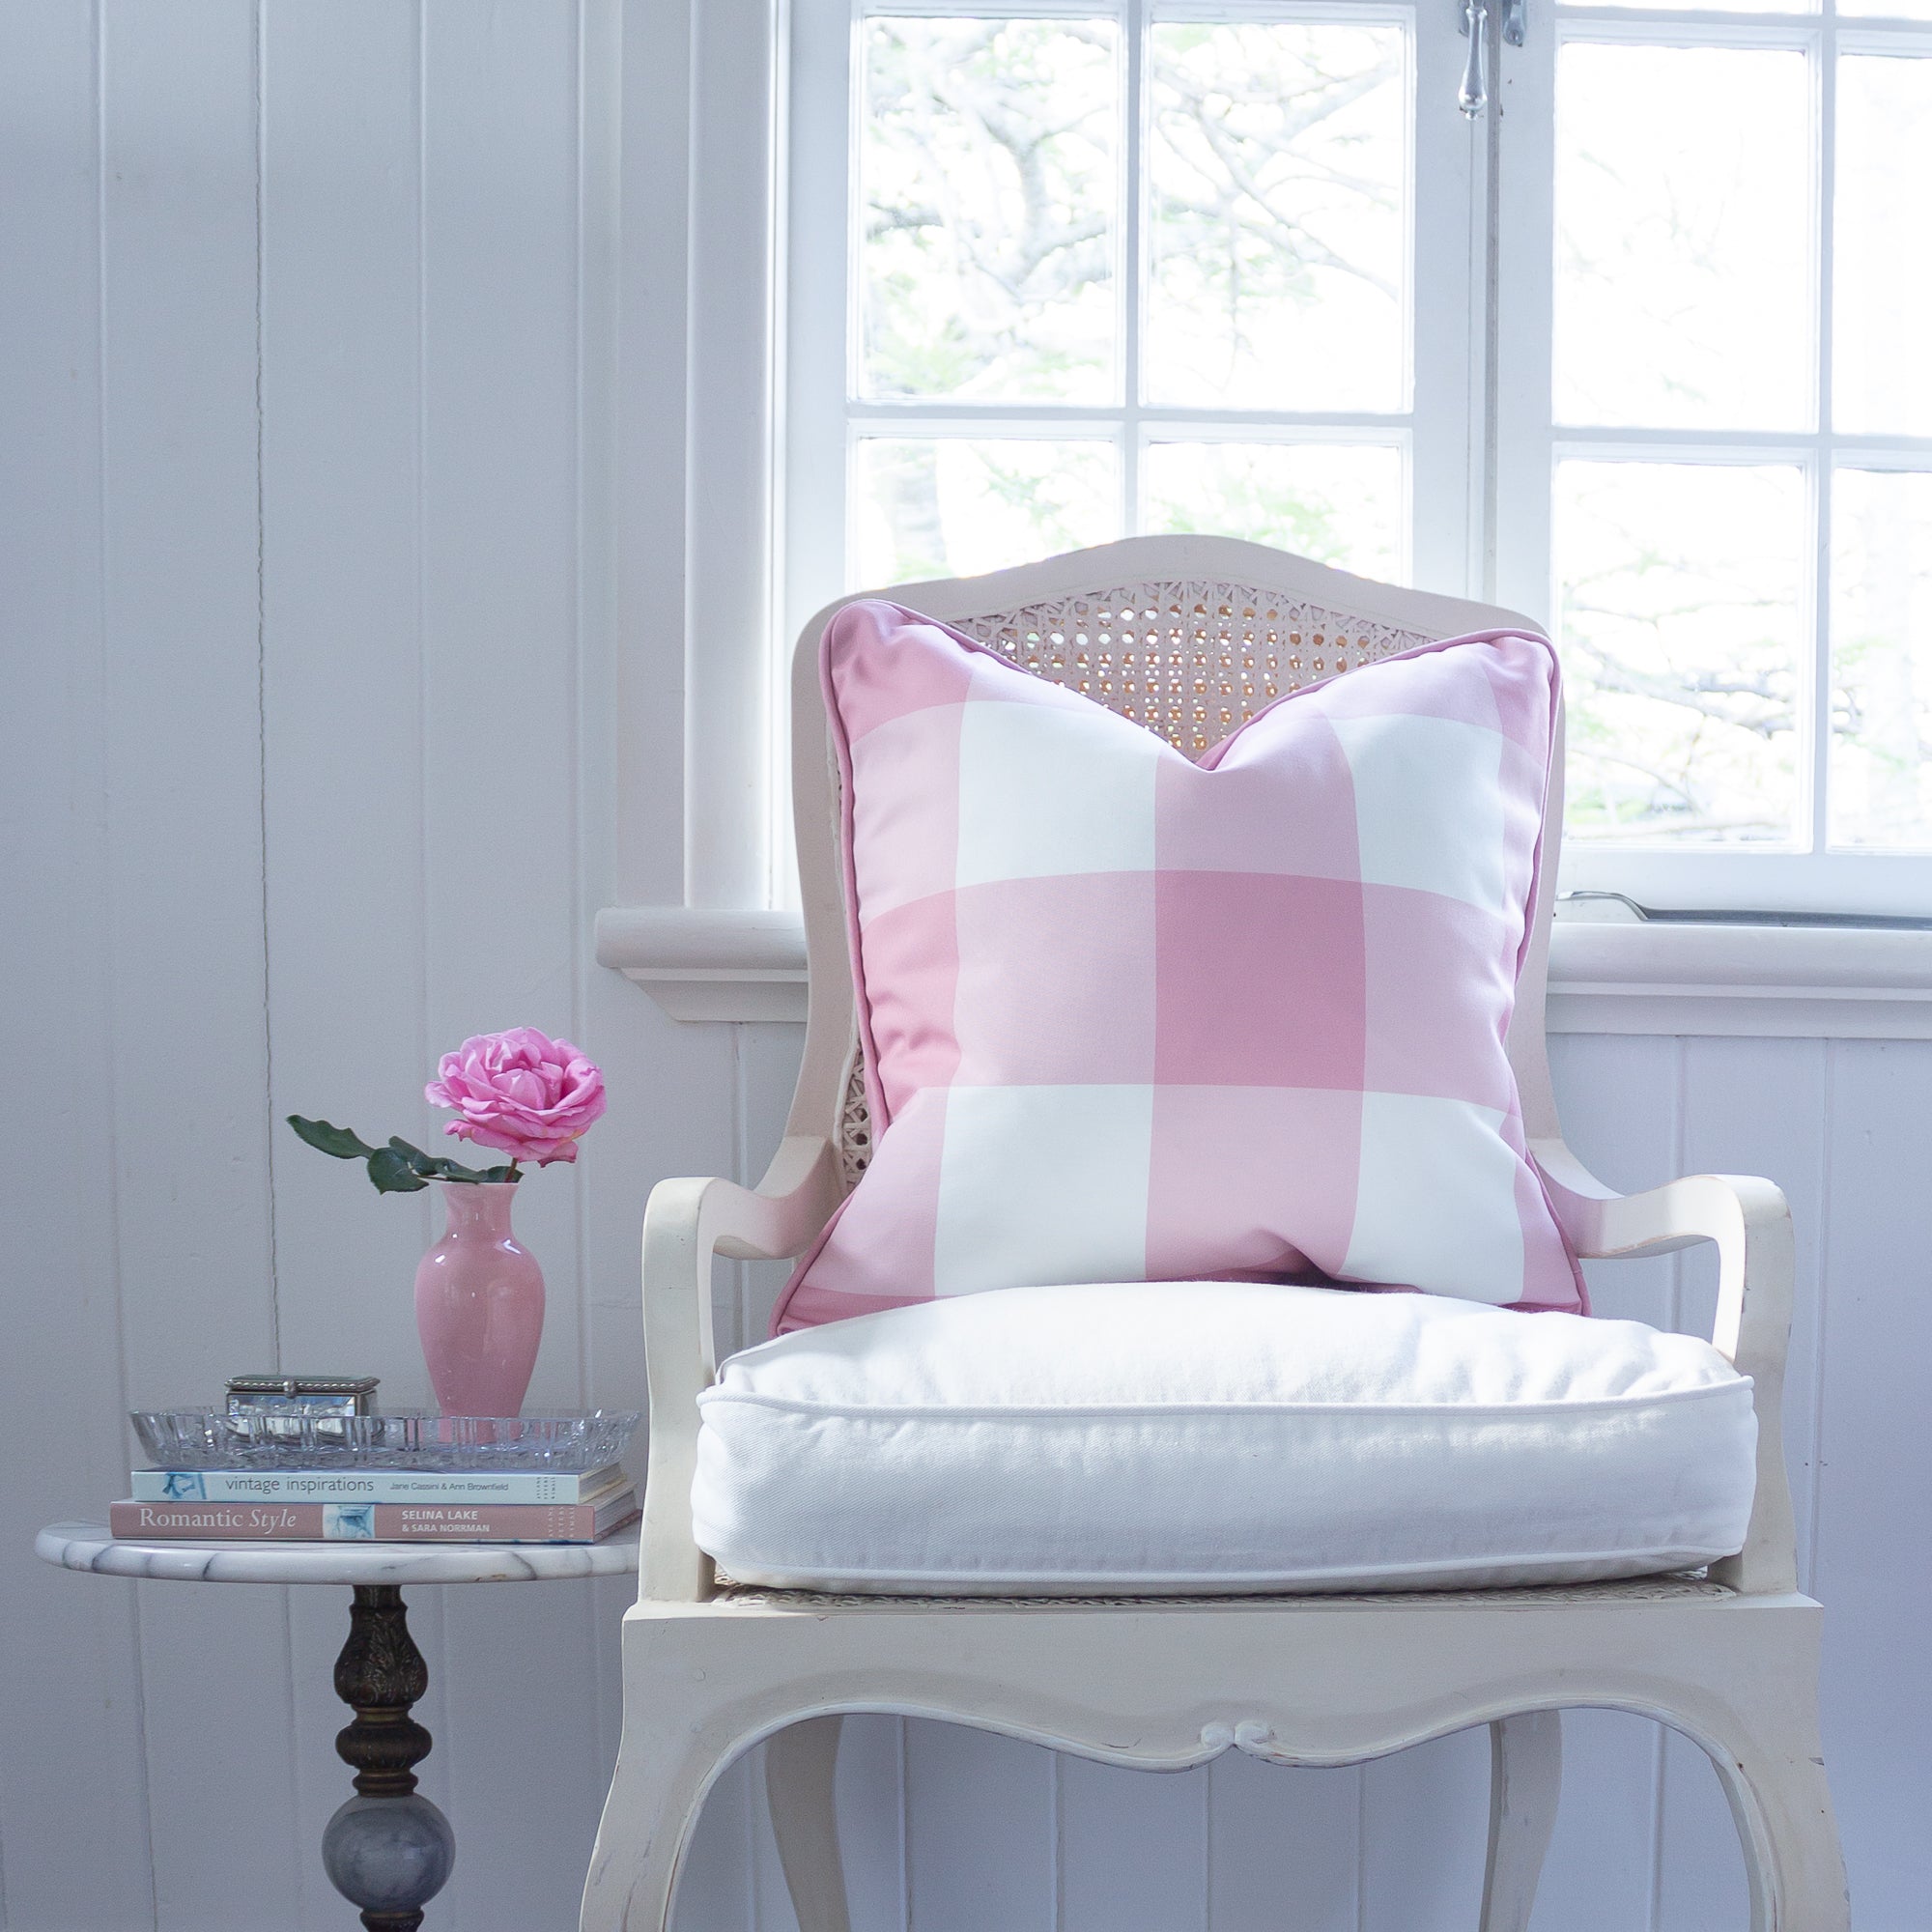 Gingham Check Jumbo Cushion - Pinks - Hydrangea Lane Home